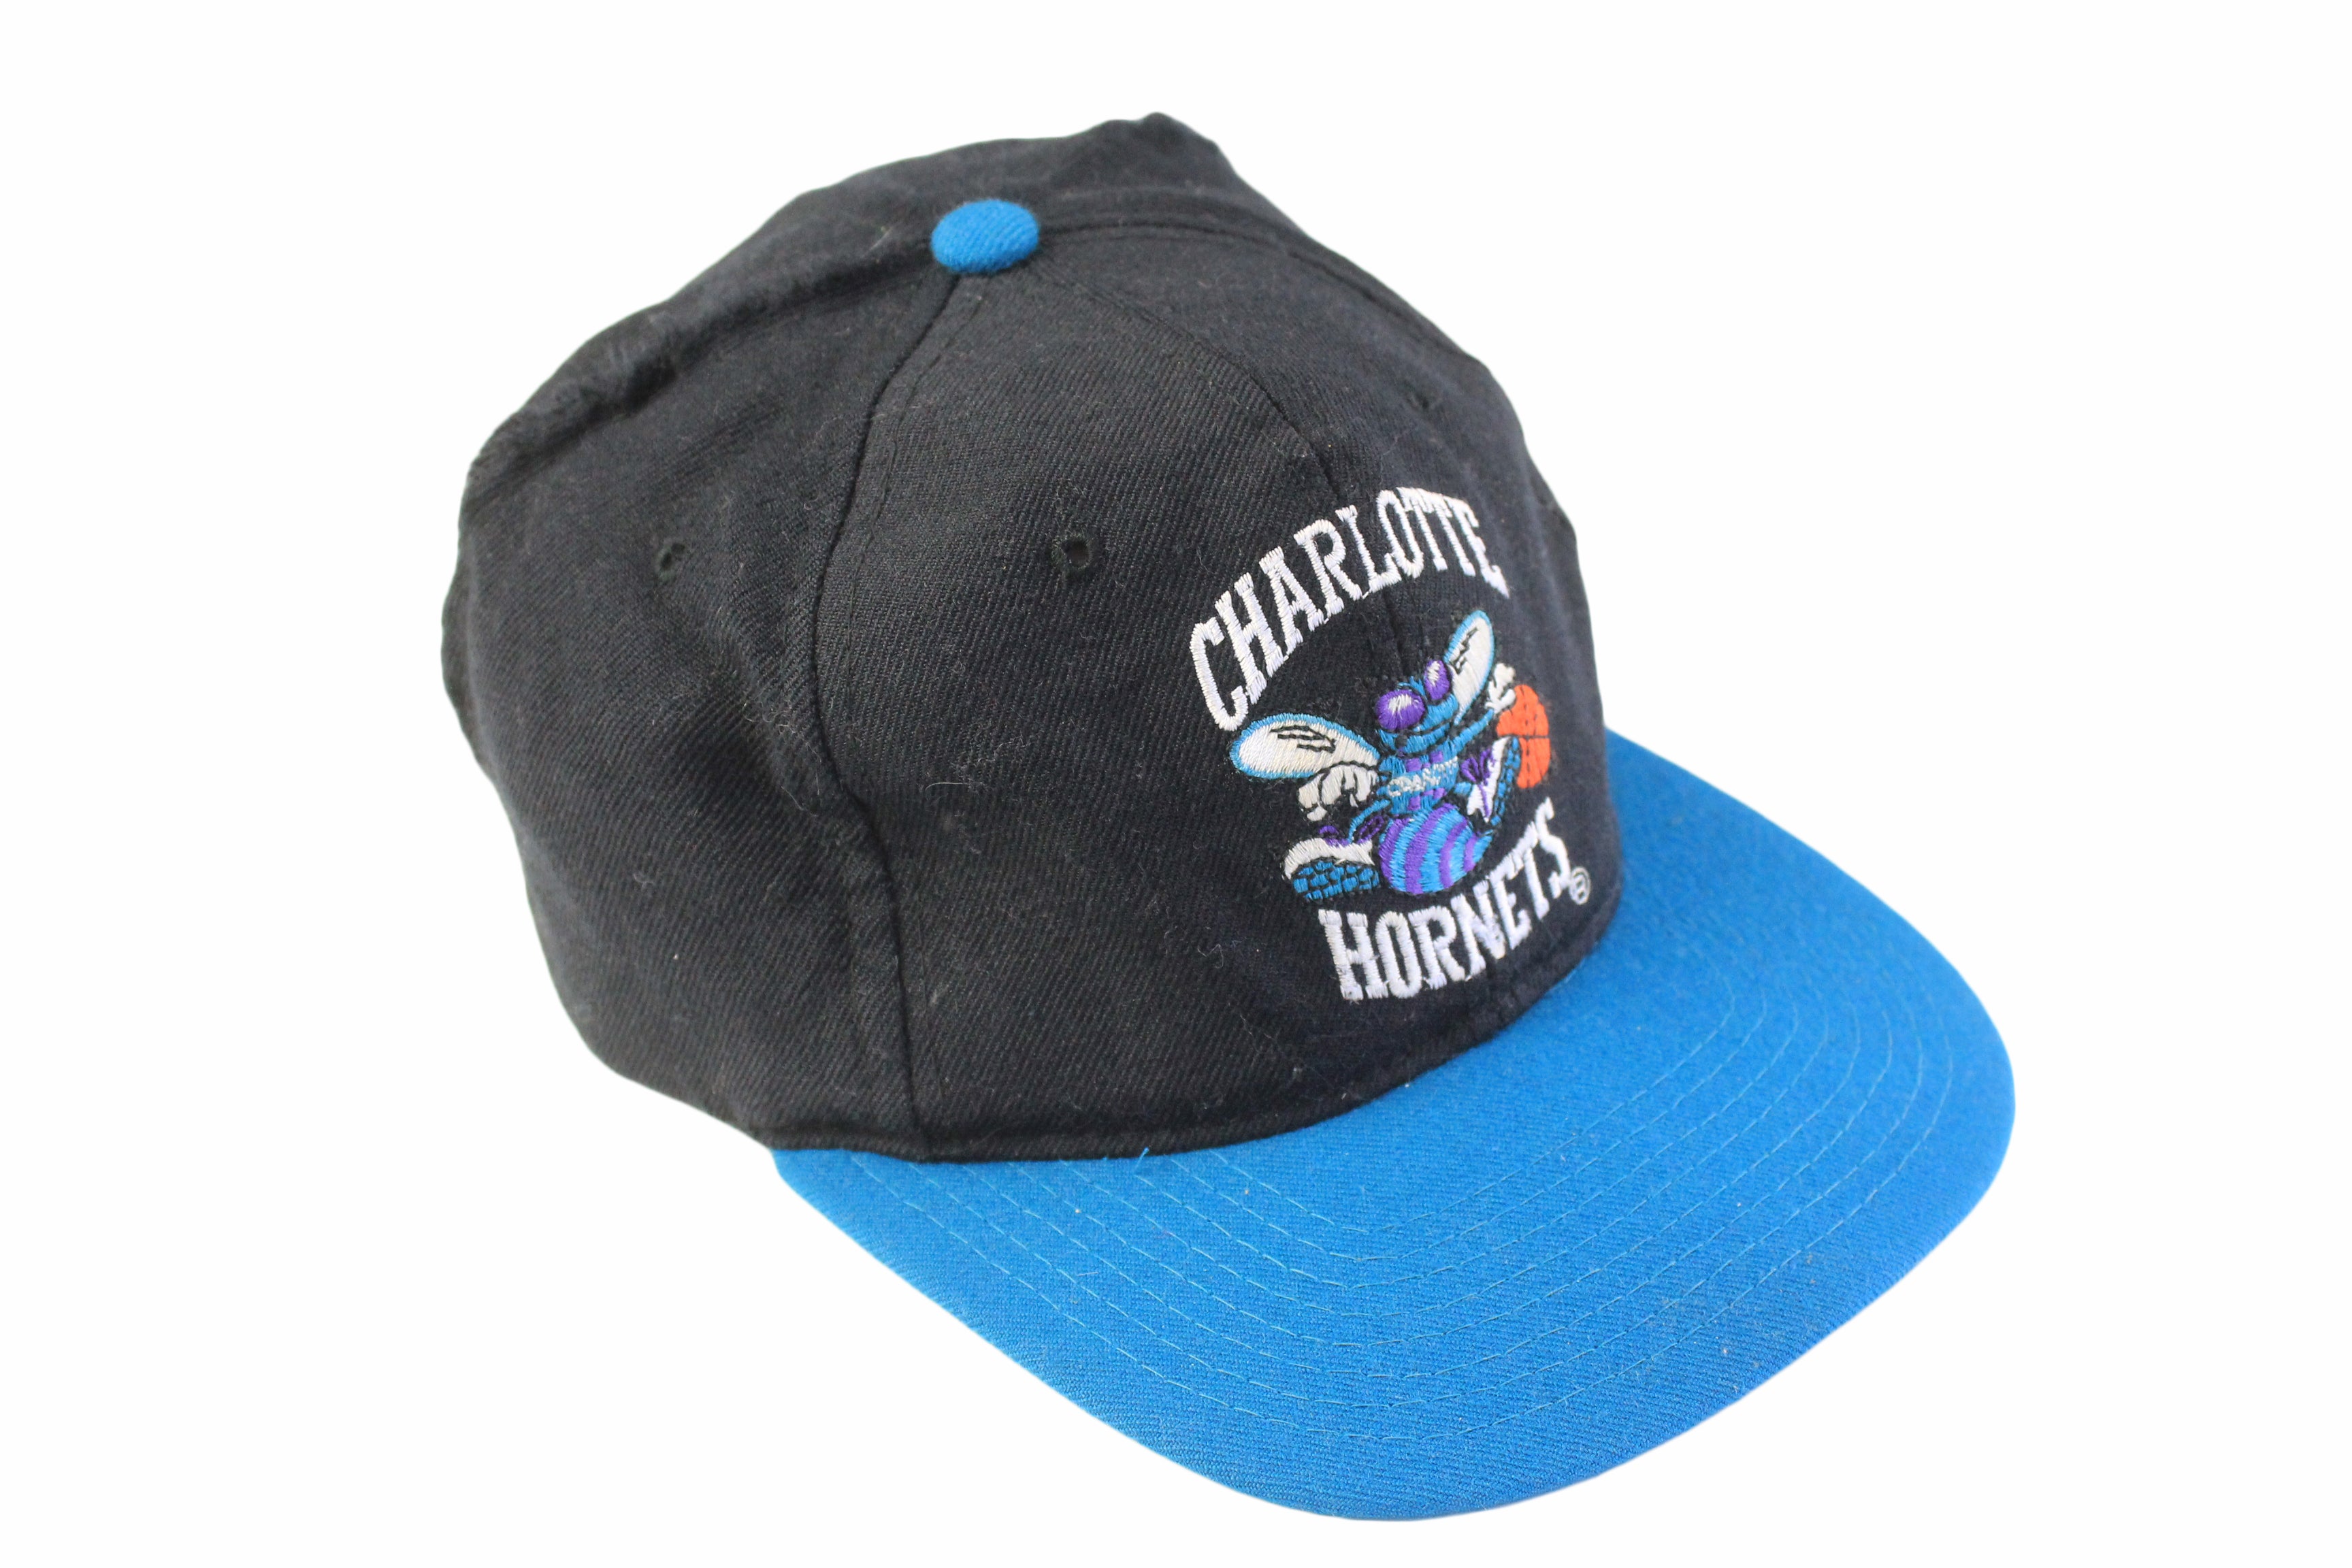 Charlotte HORNETS Original Vintage 90s STARTER Snapback Hat 